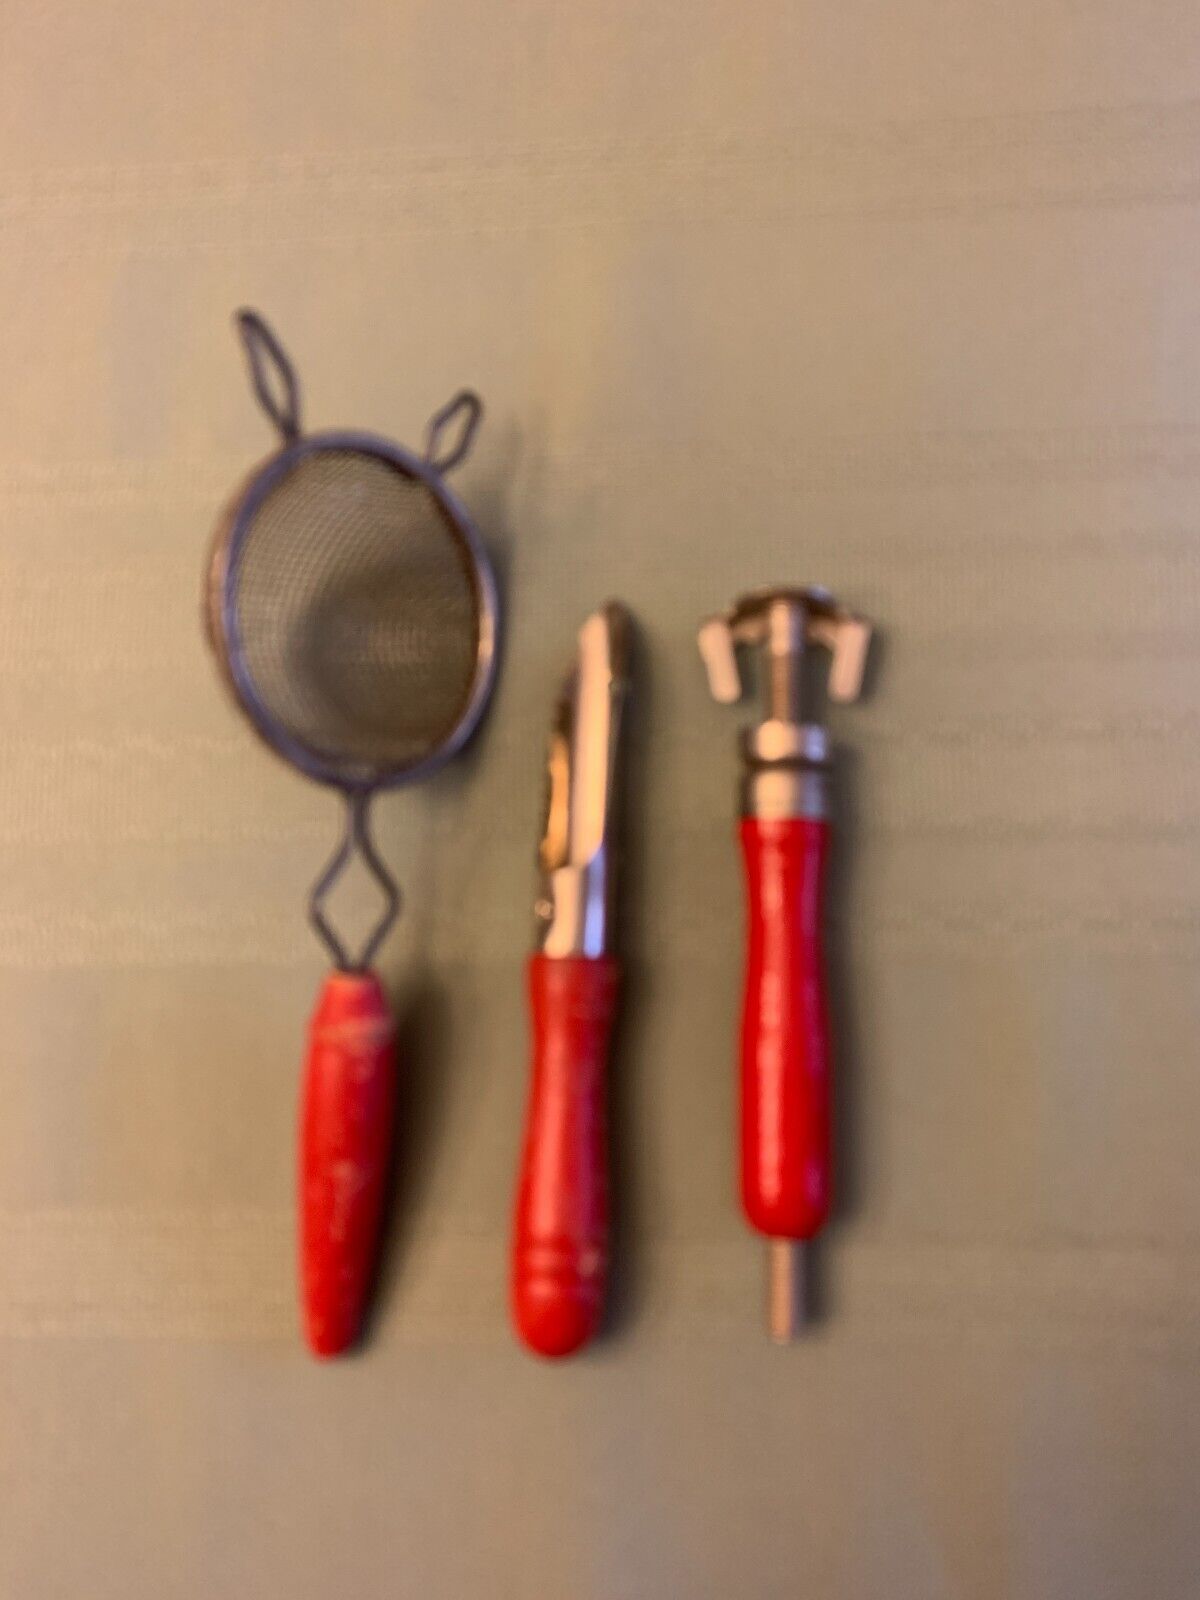 3 Vintage Red Handled Kitchen Gadgets